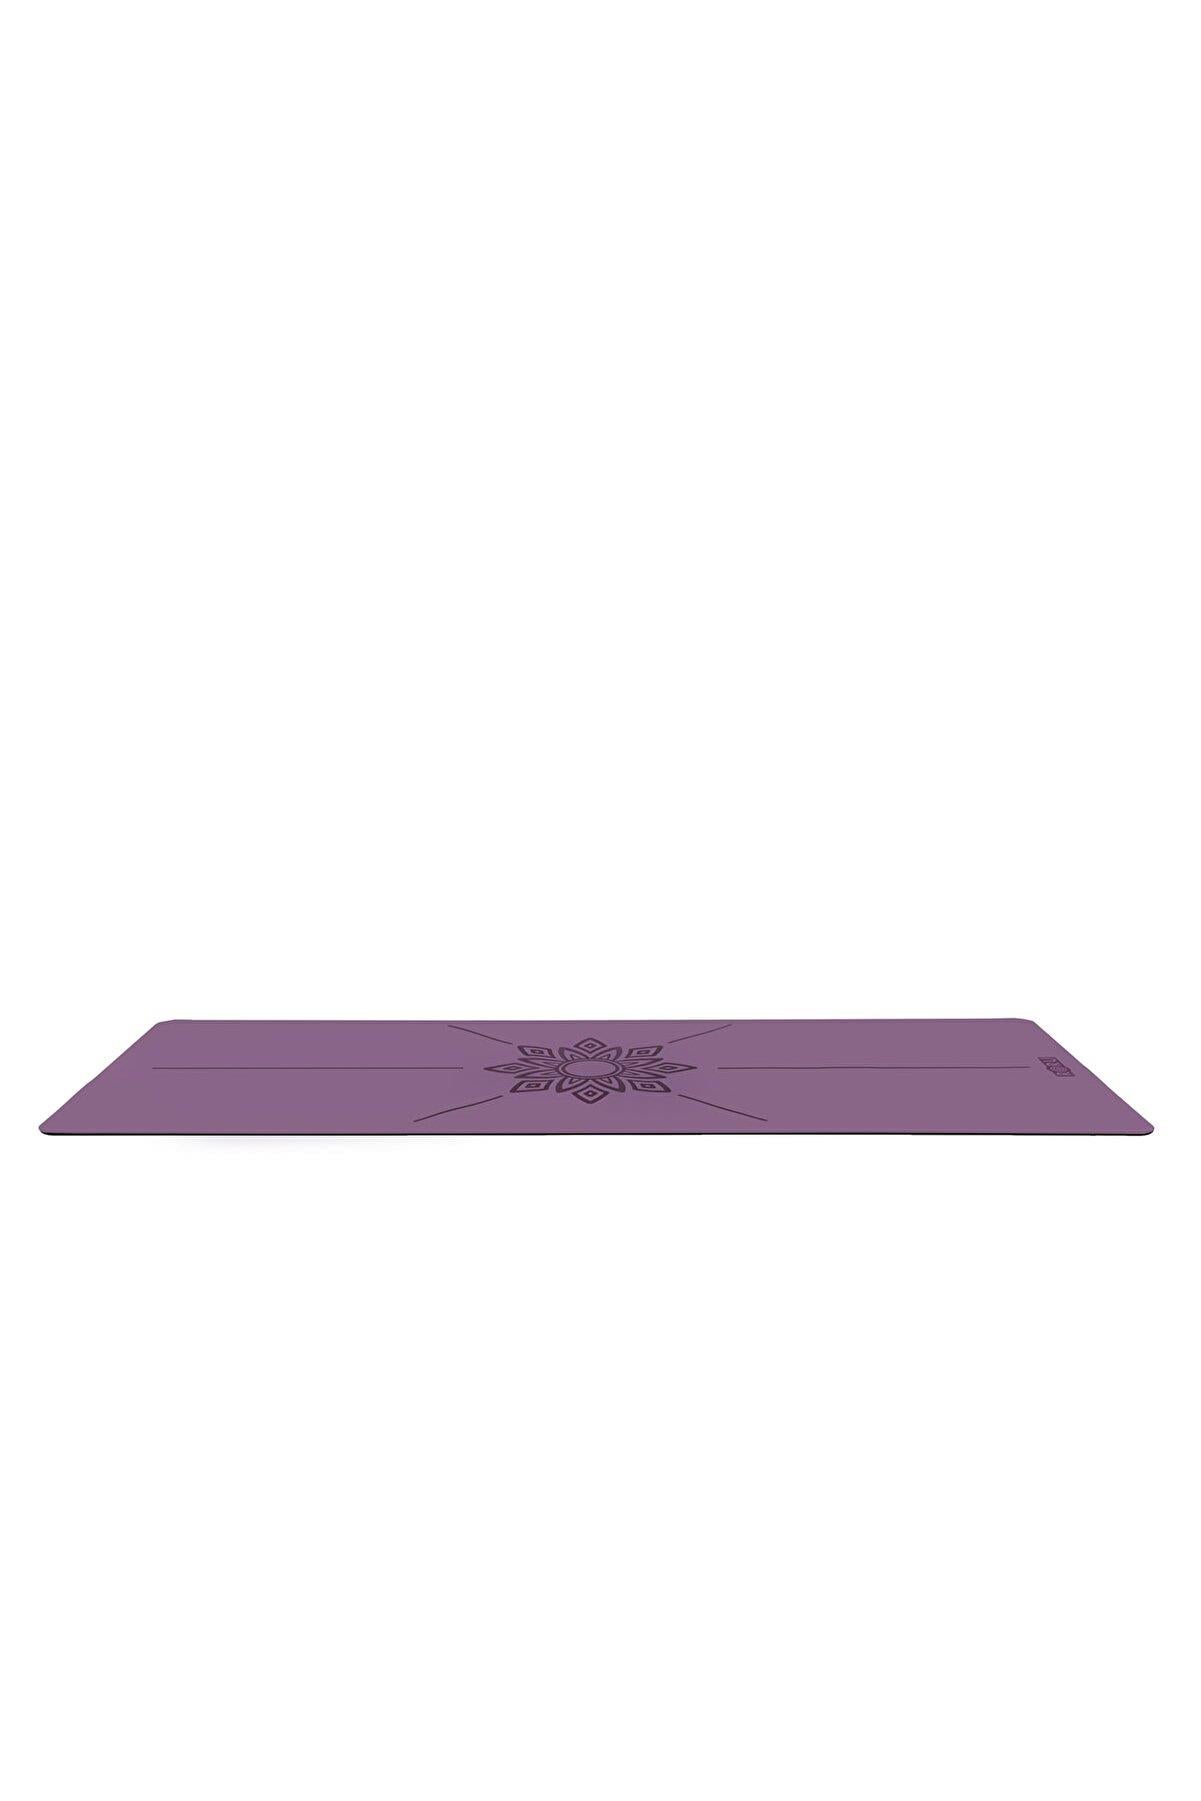 Roru Concept Sun Kaydırmaz Yoga Egzersiz Matı 183 x 68 cm 5 mm Kuru - Nemli Eller İçin, Doğal Kauçuk, Mor